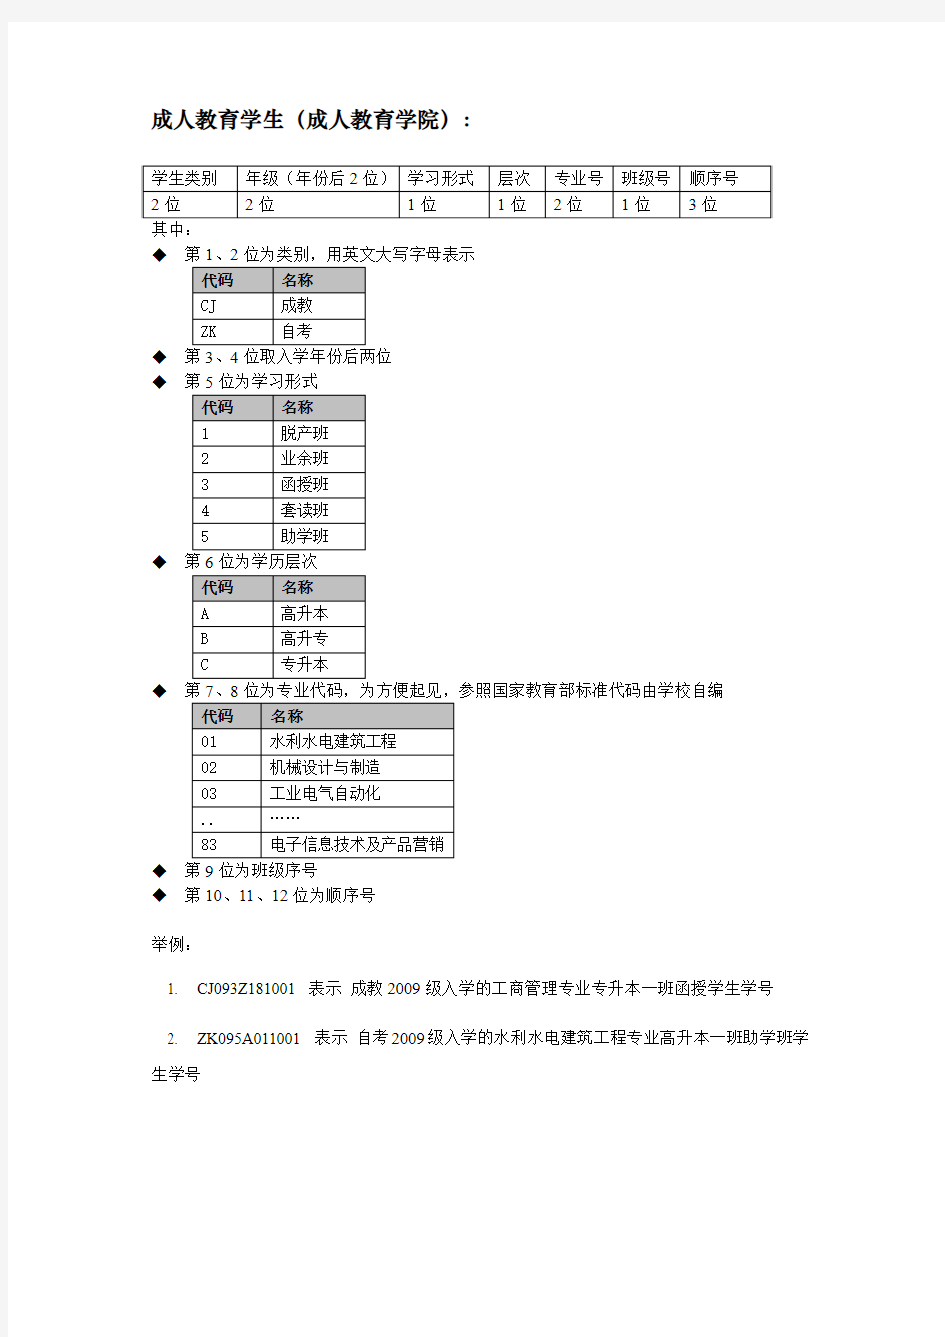 三峡大学_学生学号编码方案(建议版)